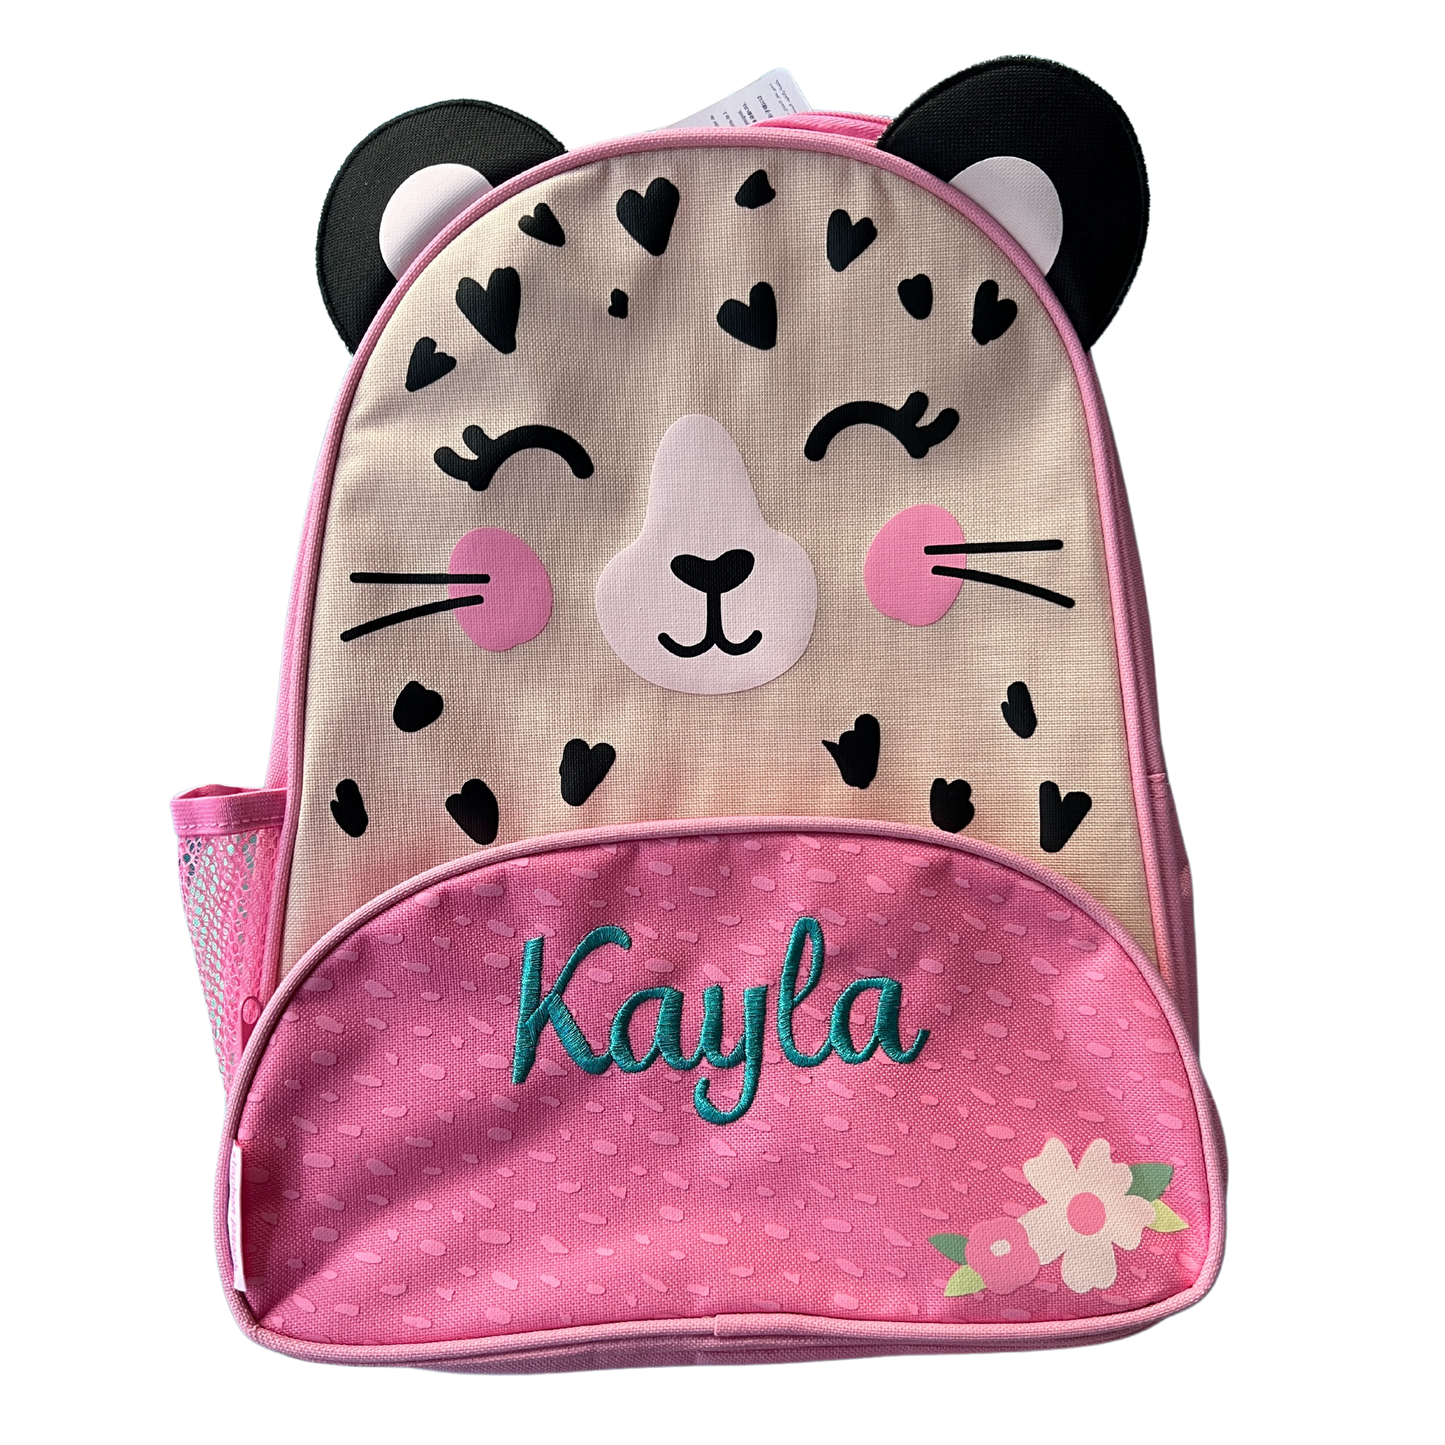 Koala Sidekick Backpack with Personalization